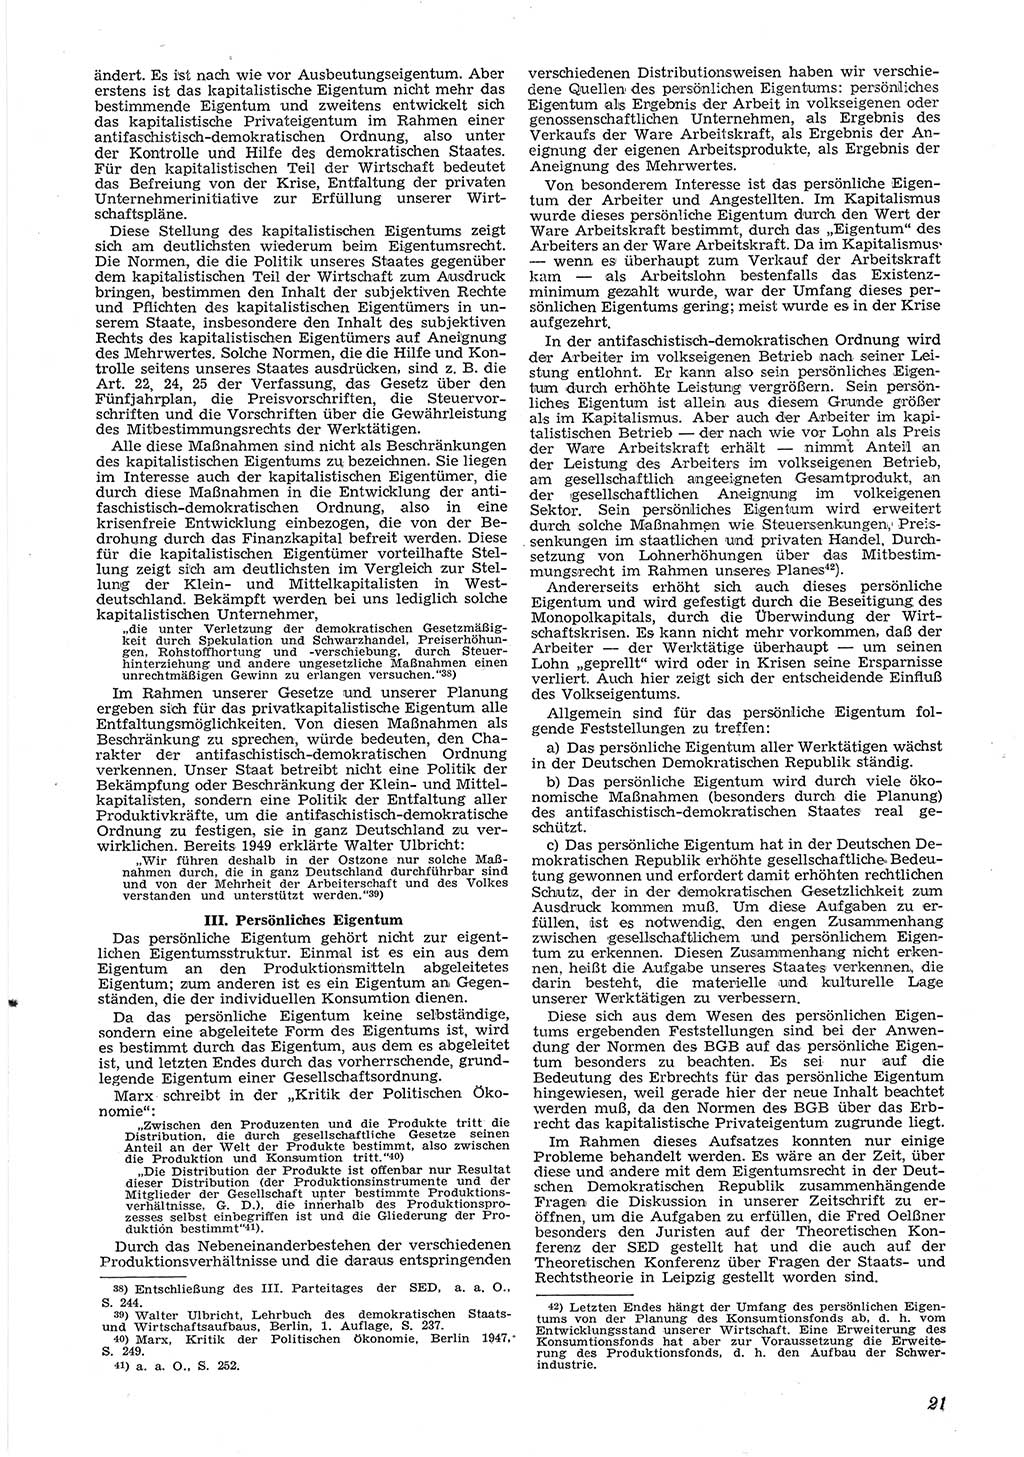 Neue Justiz (NJ), Zeitschrift für Recht und Rechtswissenschaft [Deutsche Demokratische Republik (DDR)], 6. Jahrgang 1952, Seite 21 (NJ DDR 1952, S. 21)